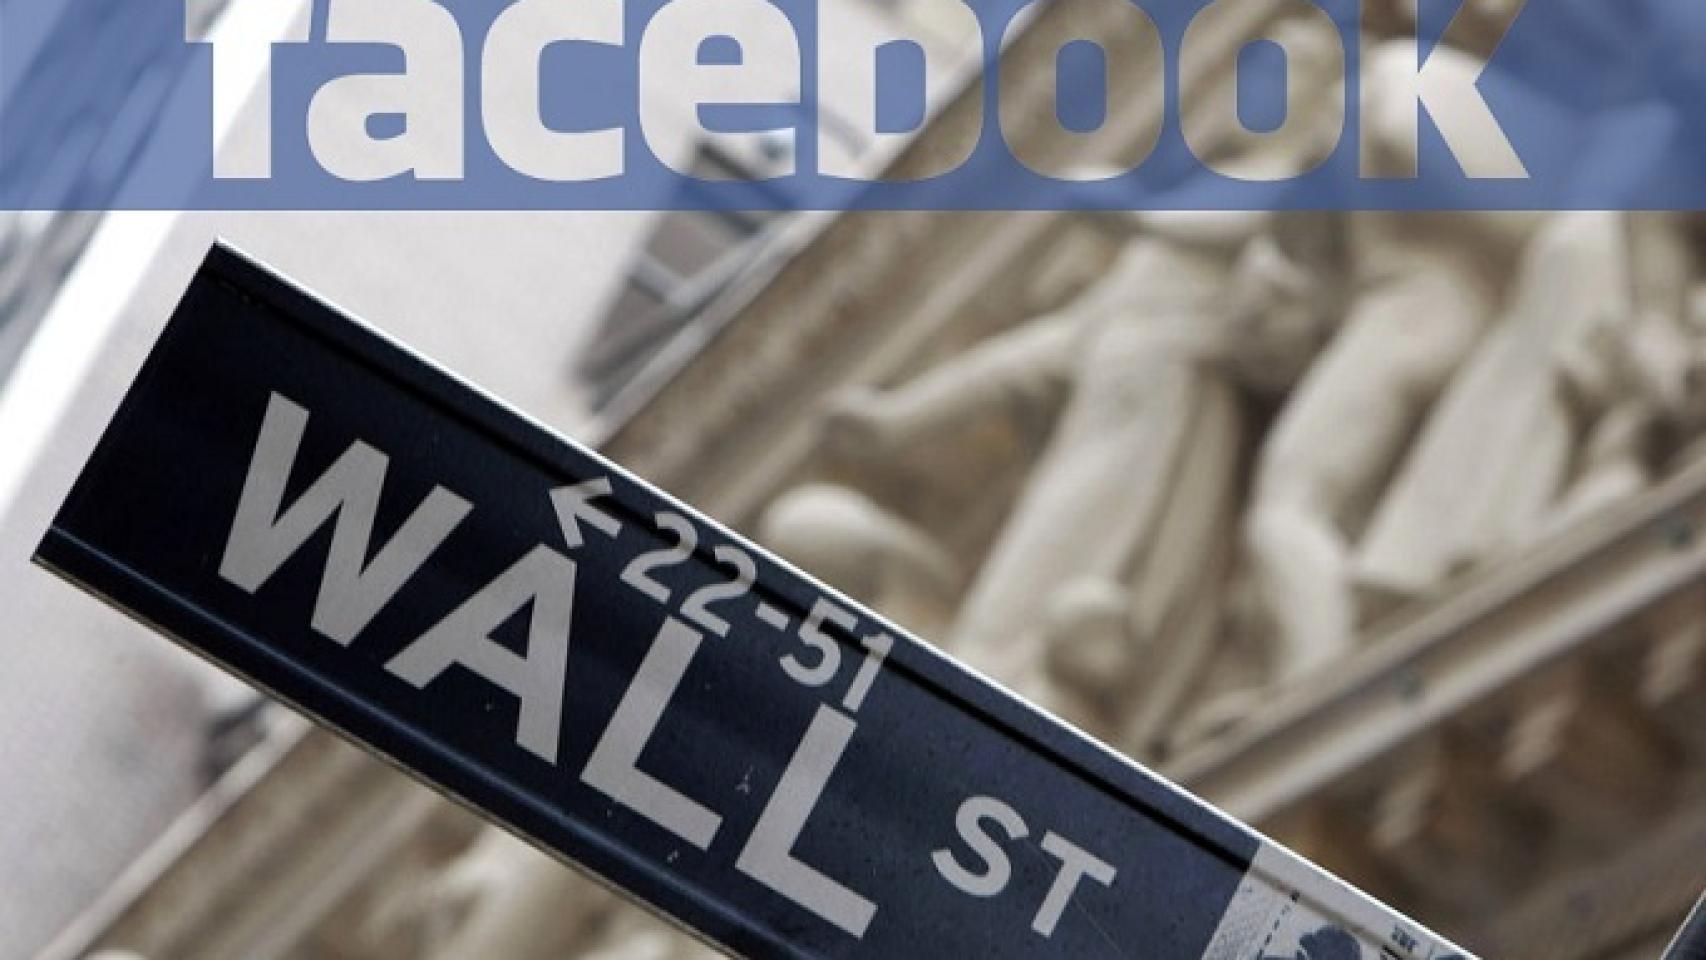 facebook-wall-street